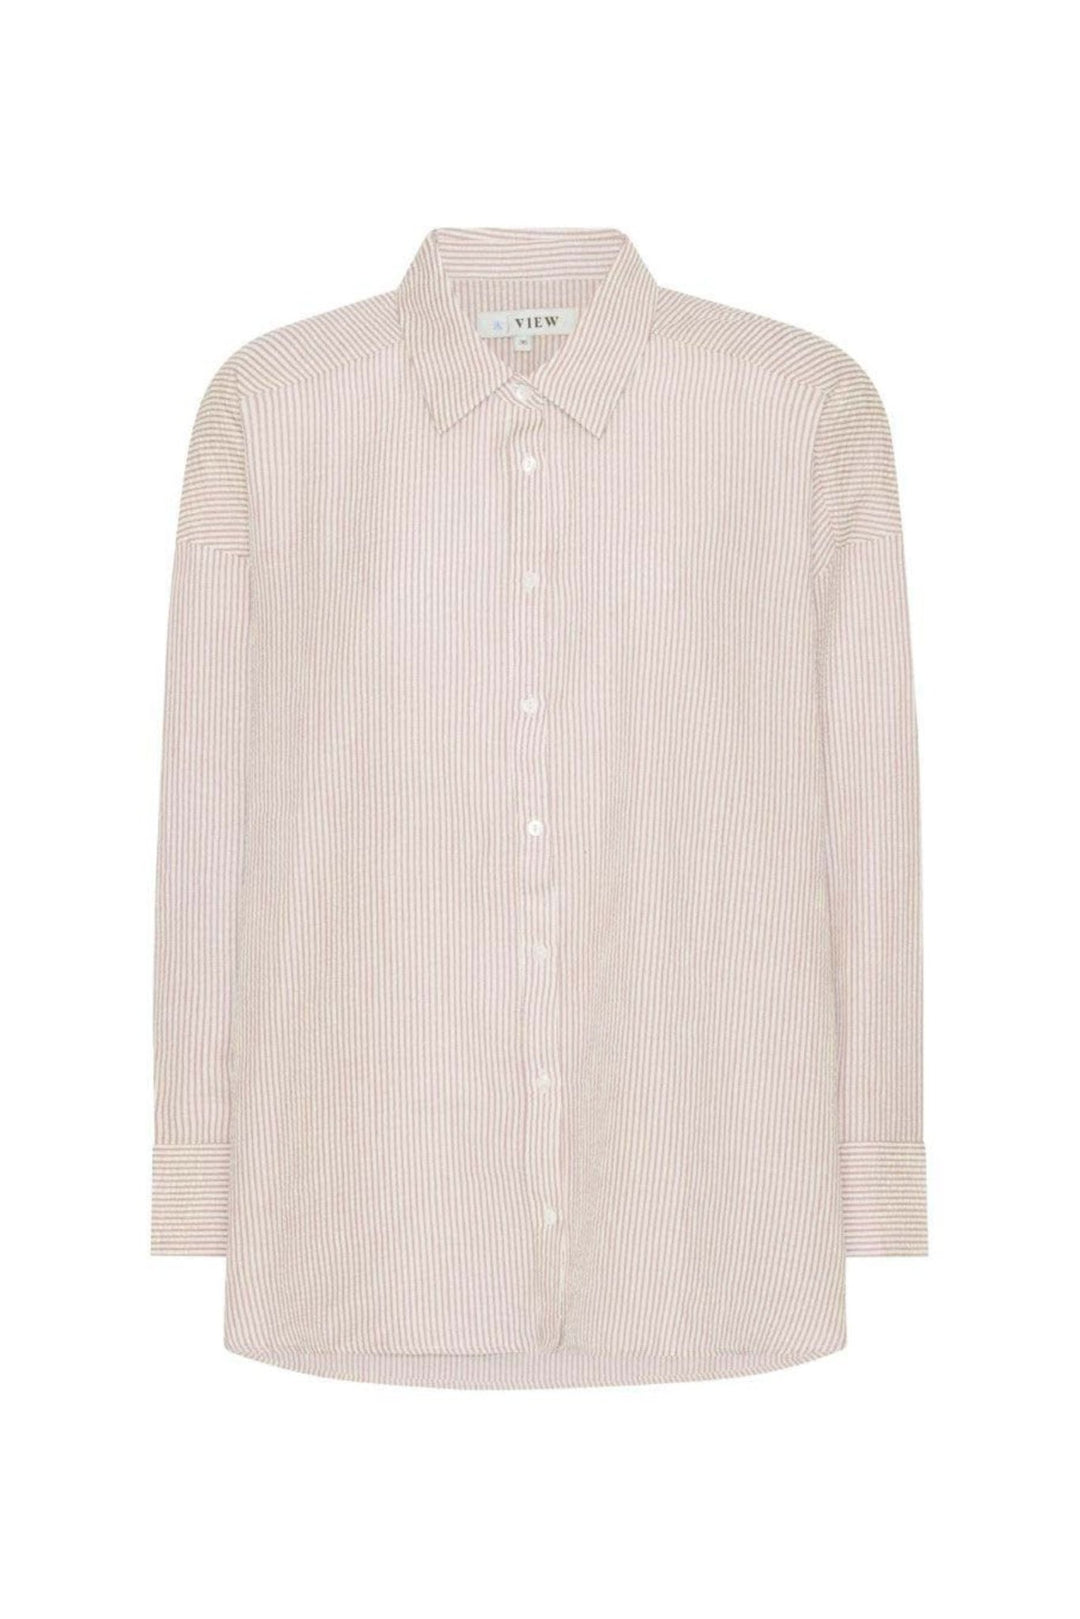 Sonja Shirt Sand/White | Skjorter og bluser | Smuk - Dameklær på nett